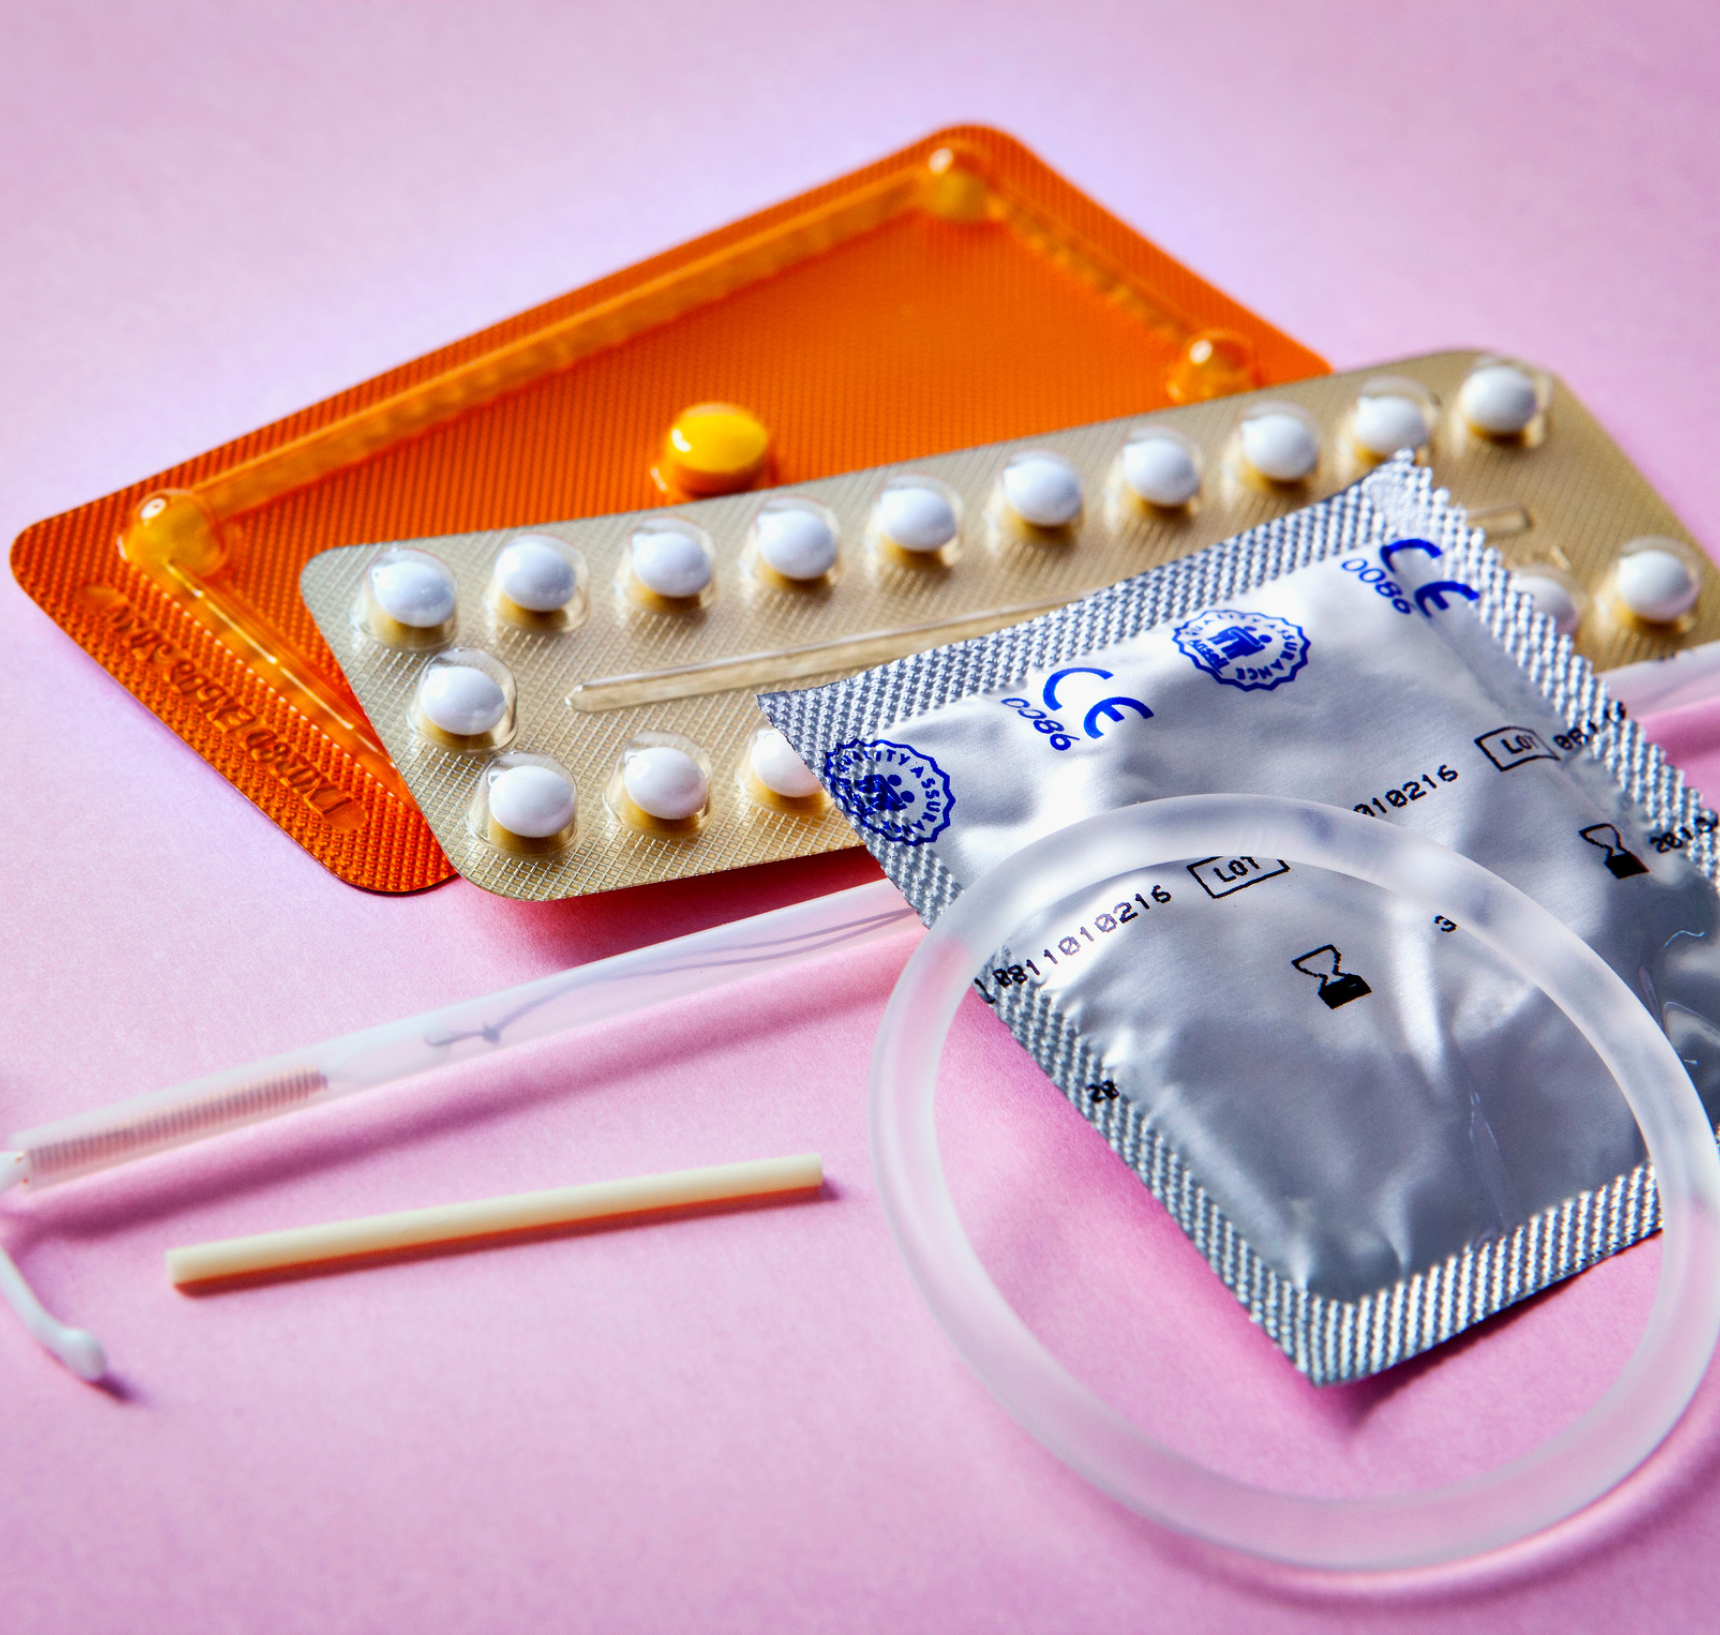 Hormonale anticonceptie als klasse 1 kankerverwekkend geclassificeerd - blog